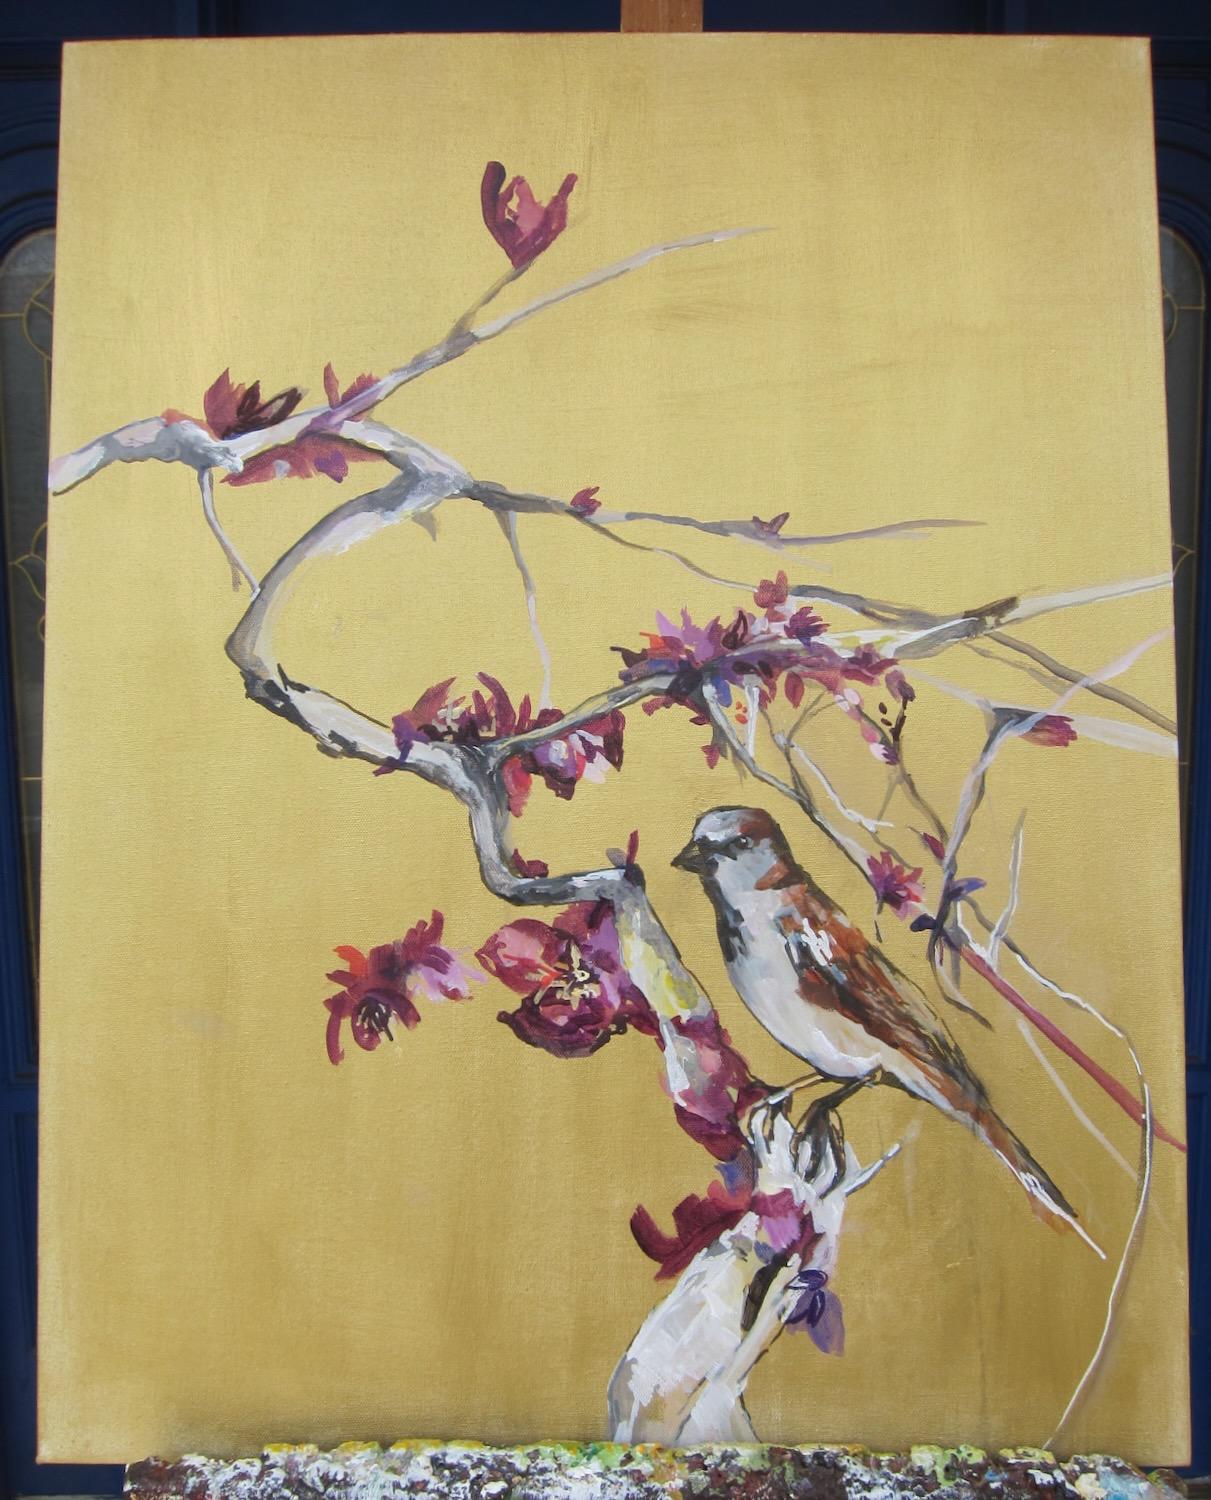 <p>Commentaires de l'artiste<br>L'artiste Colette Wirz Nauke peint un oiseau perché sur une branche d'arbre. Des fleurs violettes et pourpres enveloppent les troncs et les branches, soulignant la beauté des floraisons. Collete crée une atmosphère